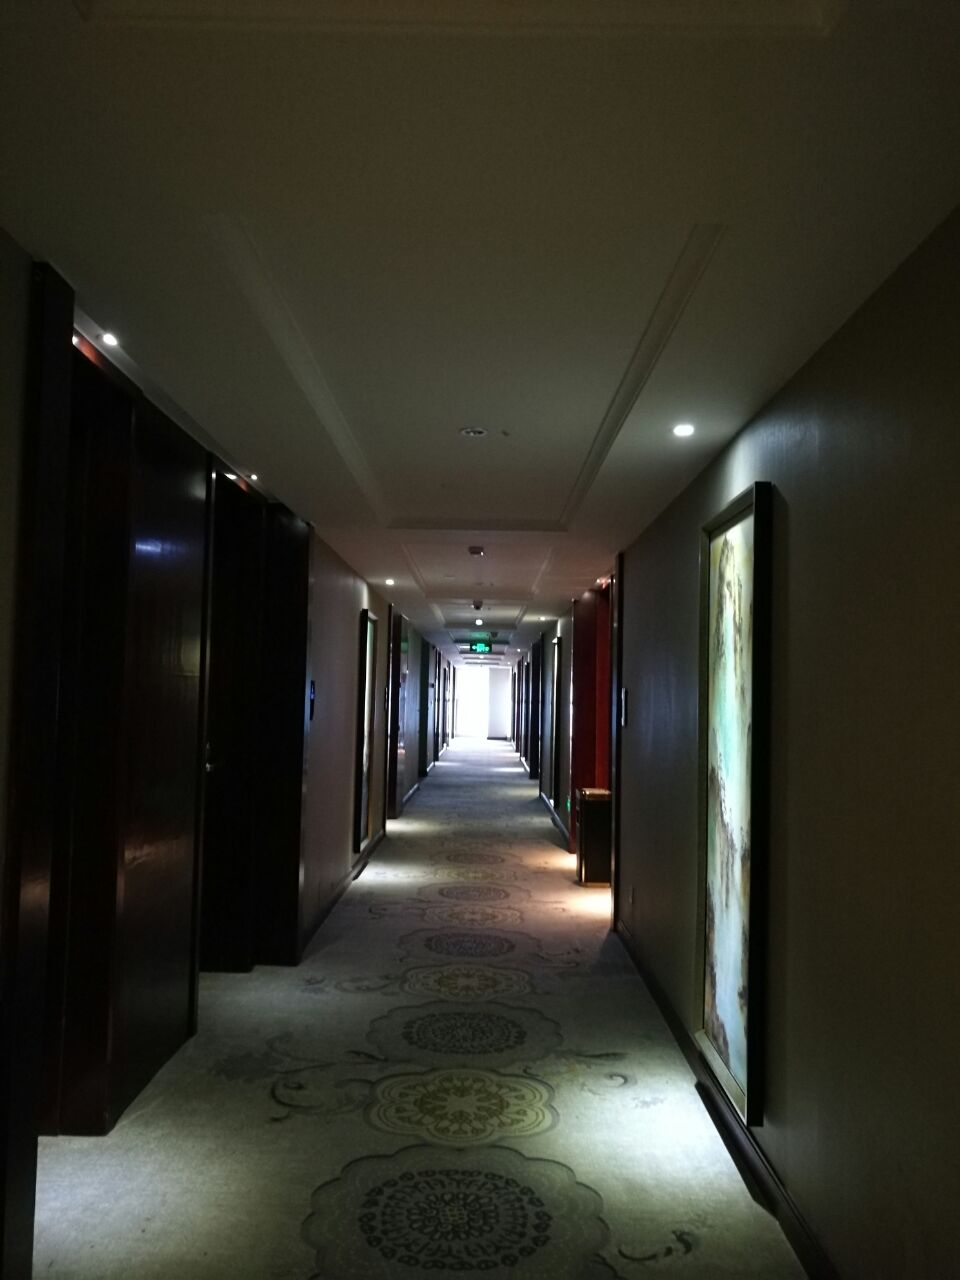 【携程攻略】景点,带老公和孩子去温江玩,下单入住拉菲国际酒店,当时